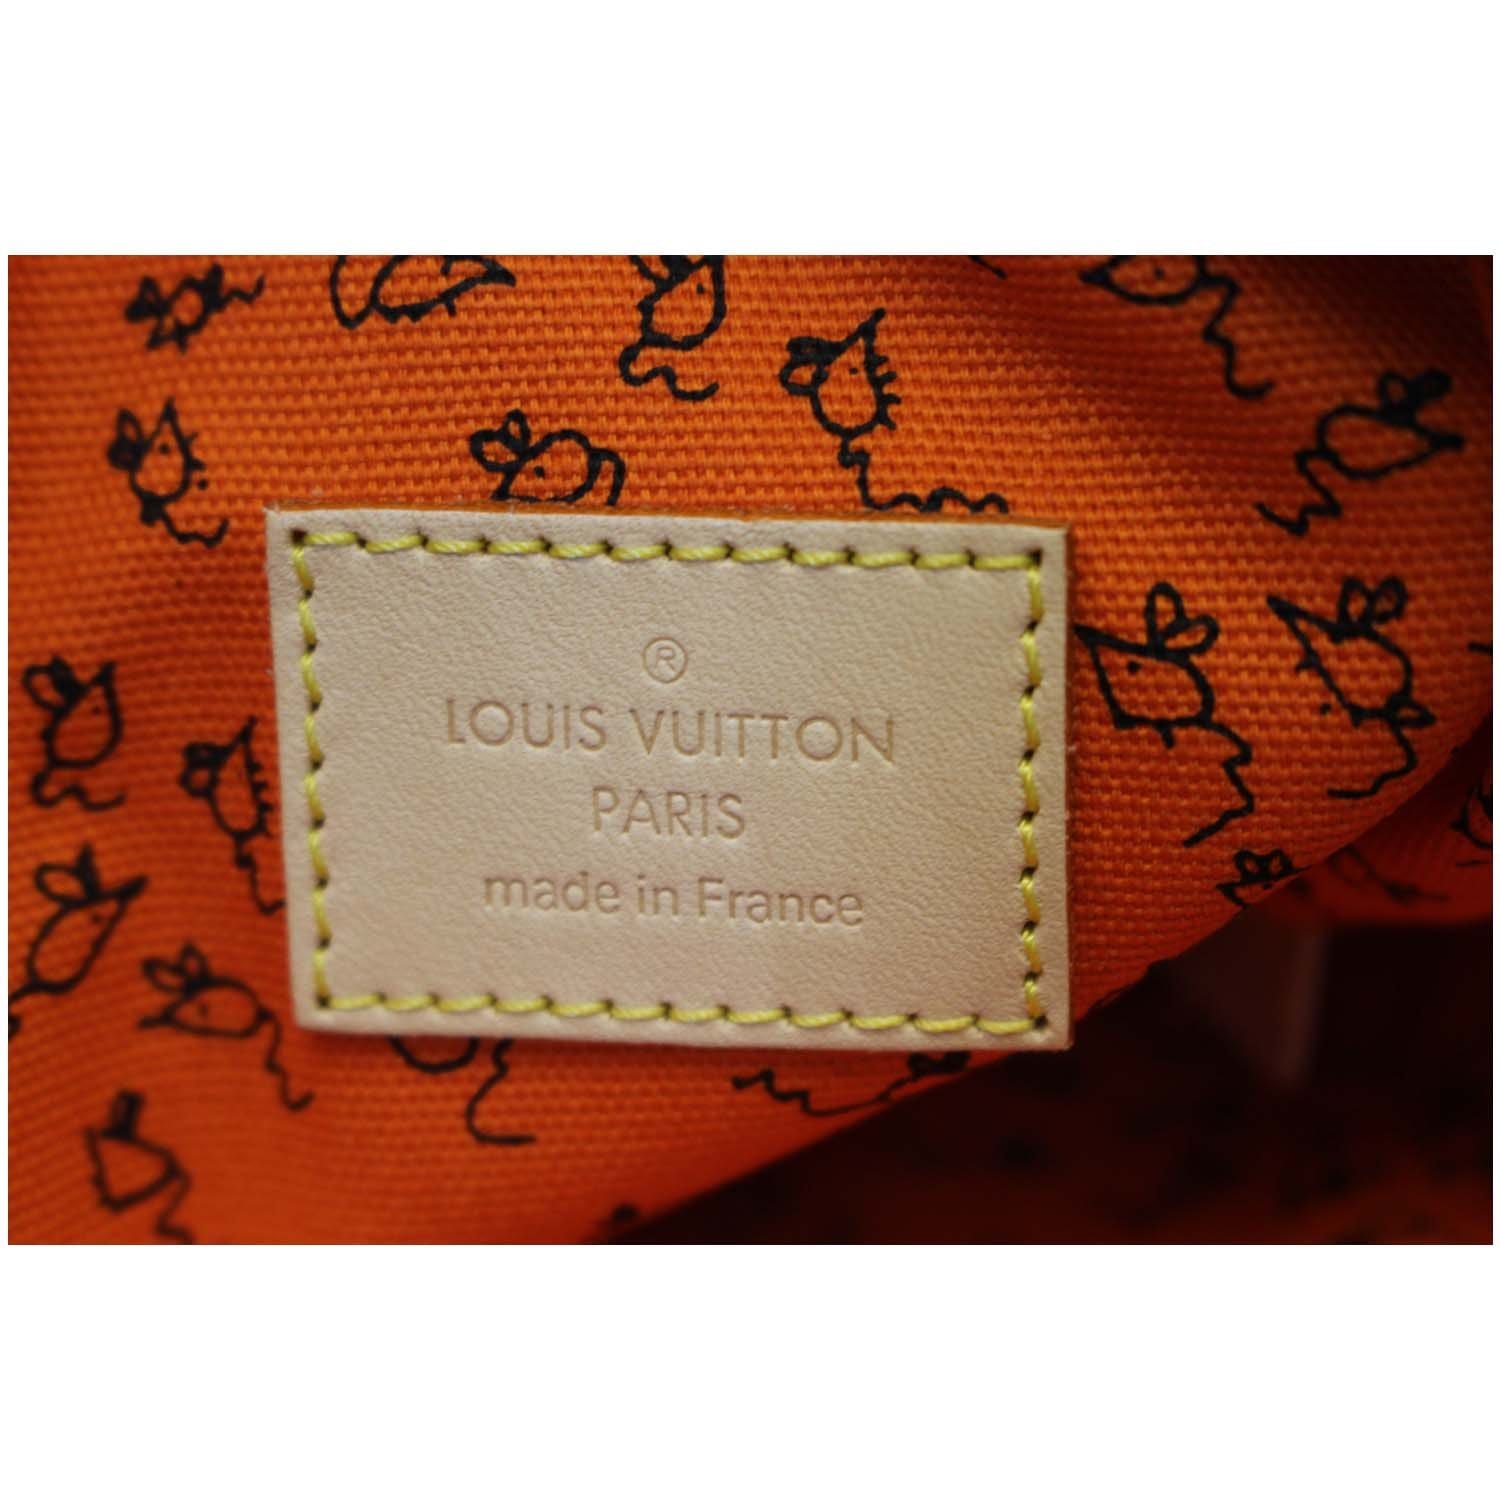 Louis Vuitton Neverfull Pochette Limited Edition Grace Coddington Catogram  Canvas Large Brown 91106134